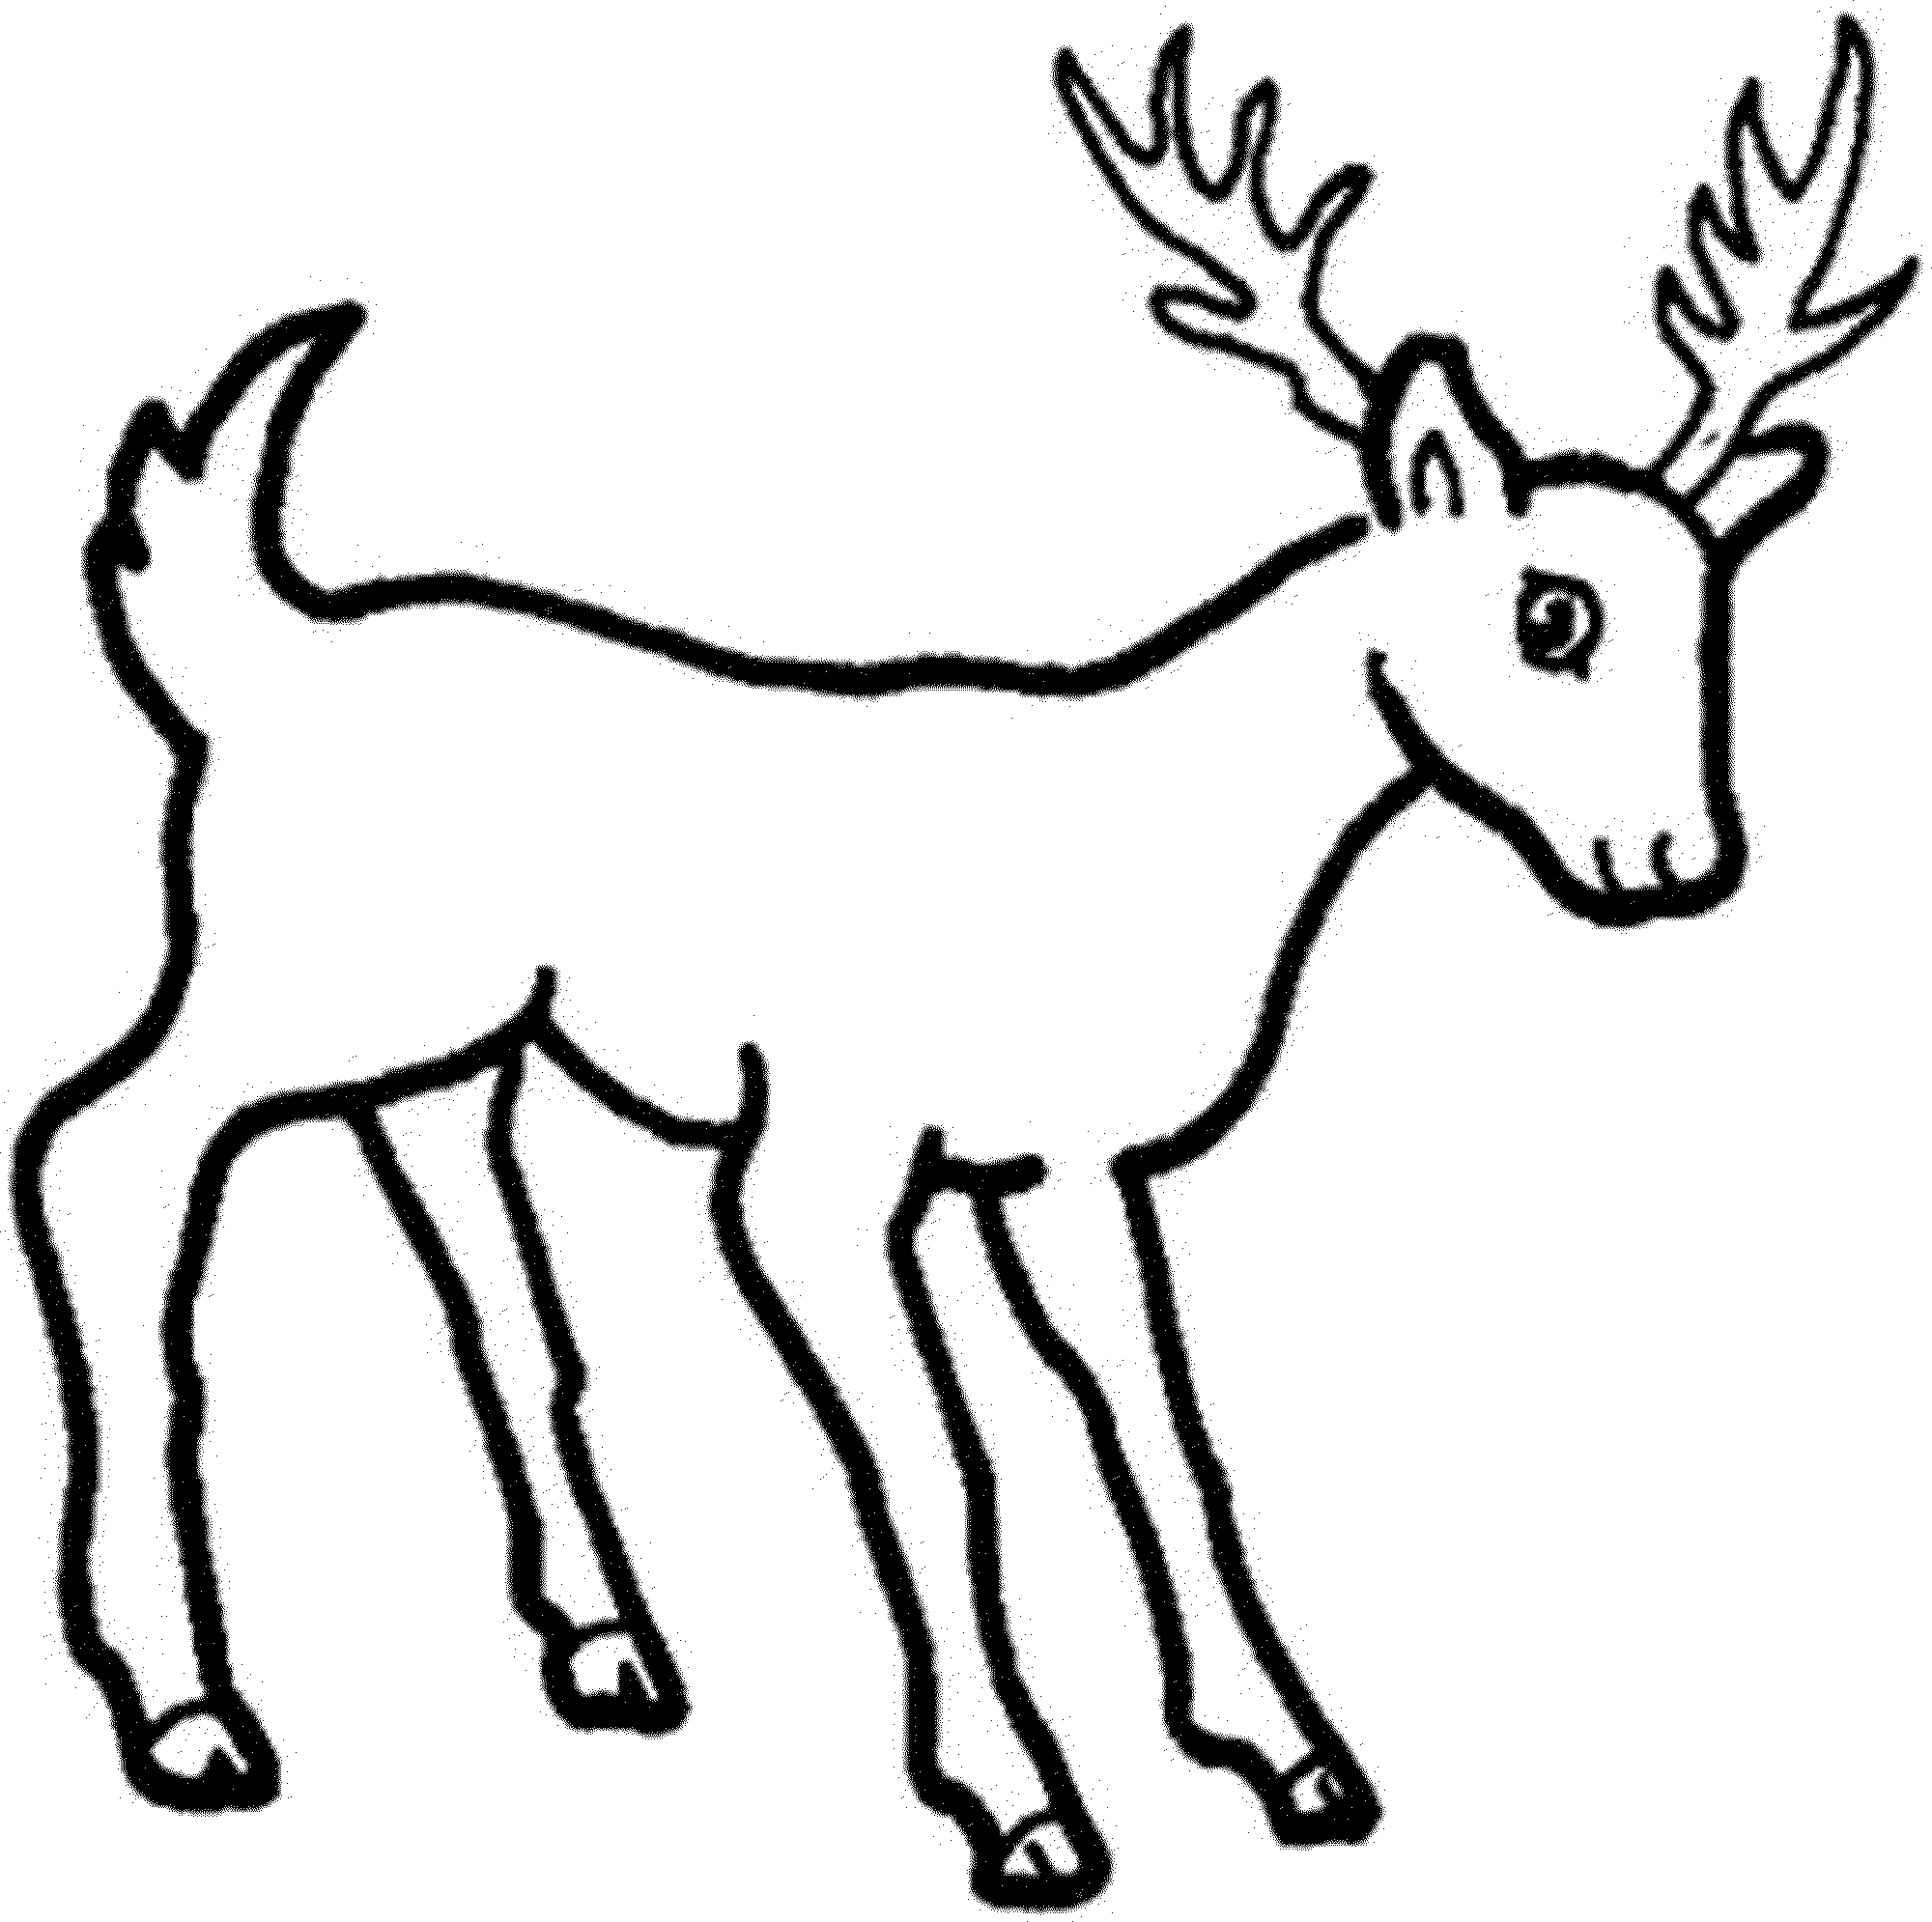 4 Best Images of Family Deer Sketches Printable - Deer Hunting ...